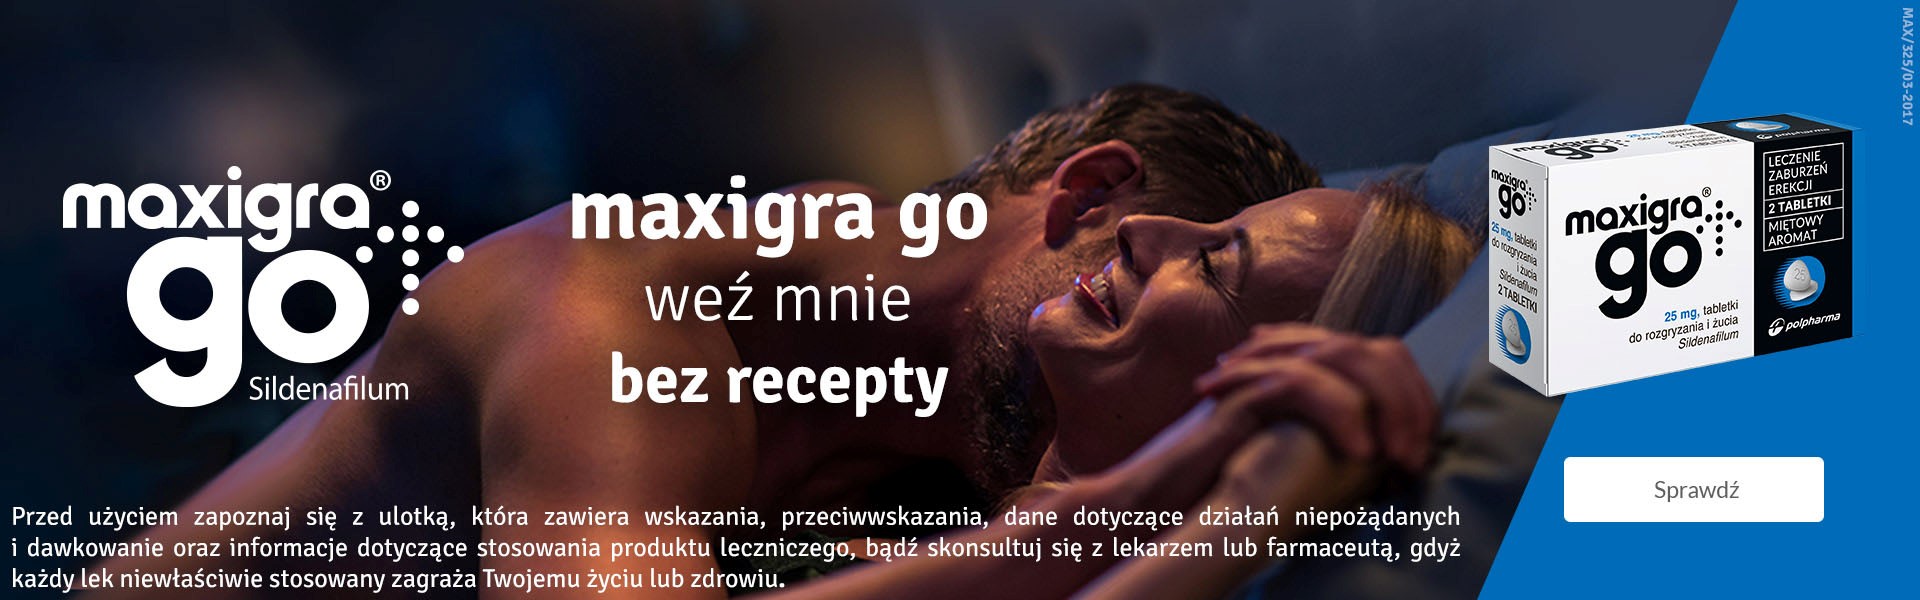 Podwójne GOLD STEVIE® AWARD dla kampanii leku MAXIGRA GO! Maxigra GO maxigra go